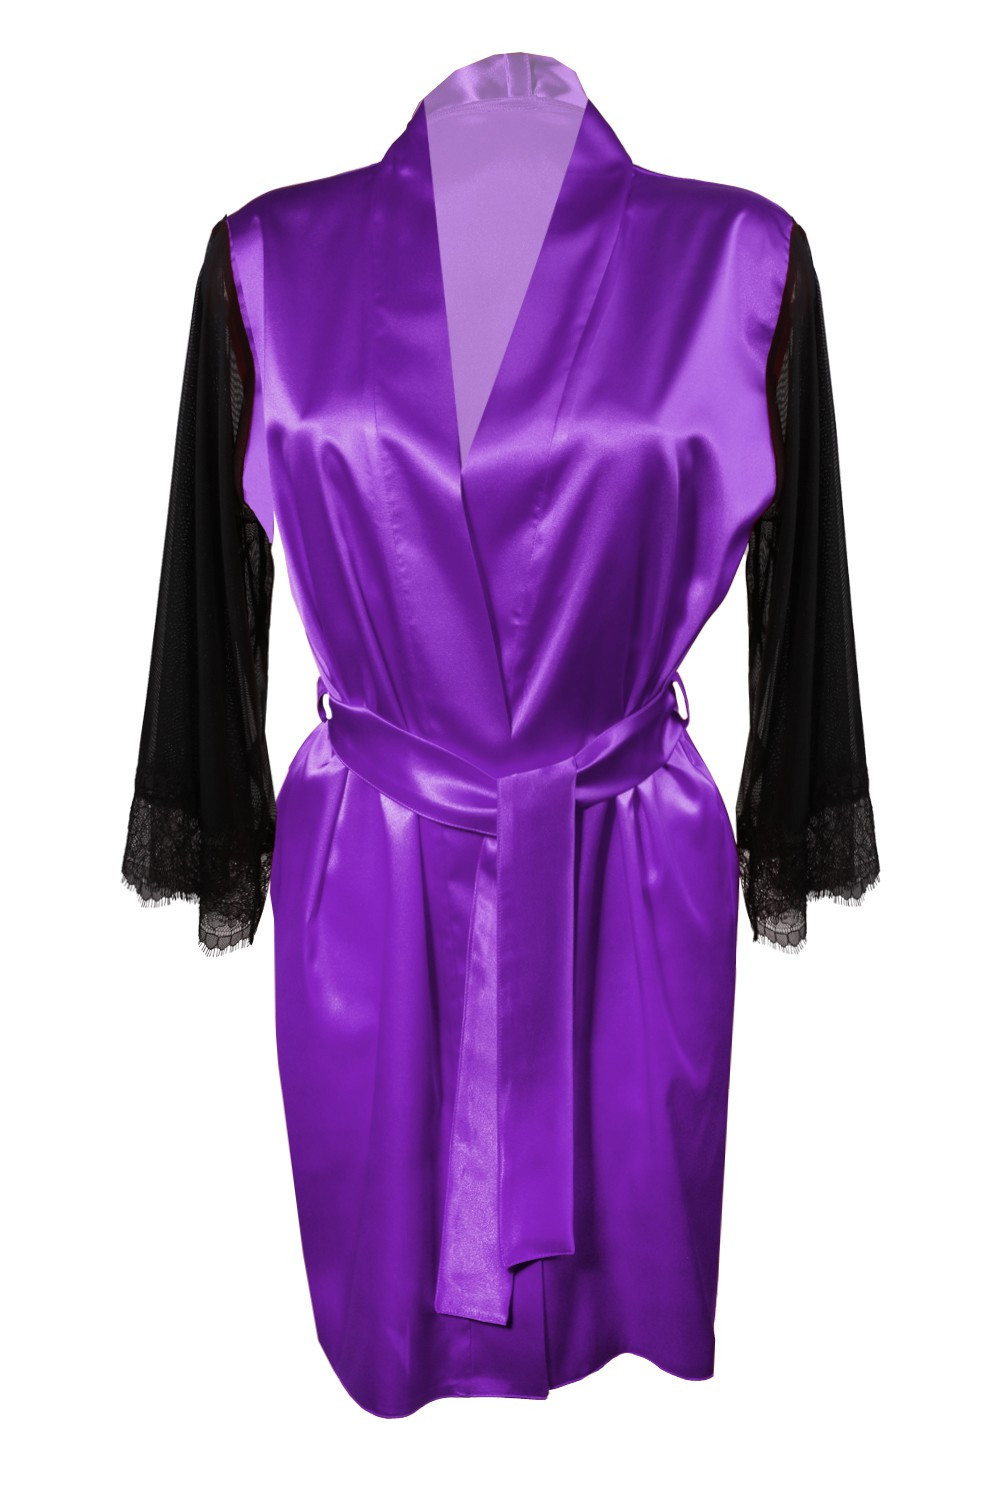 Housecoat model 18227303 Violet L Violet - DKaren